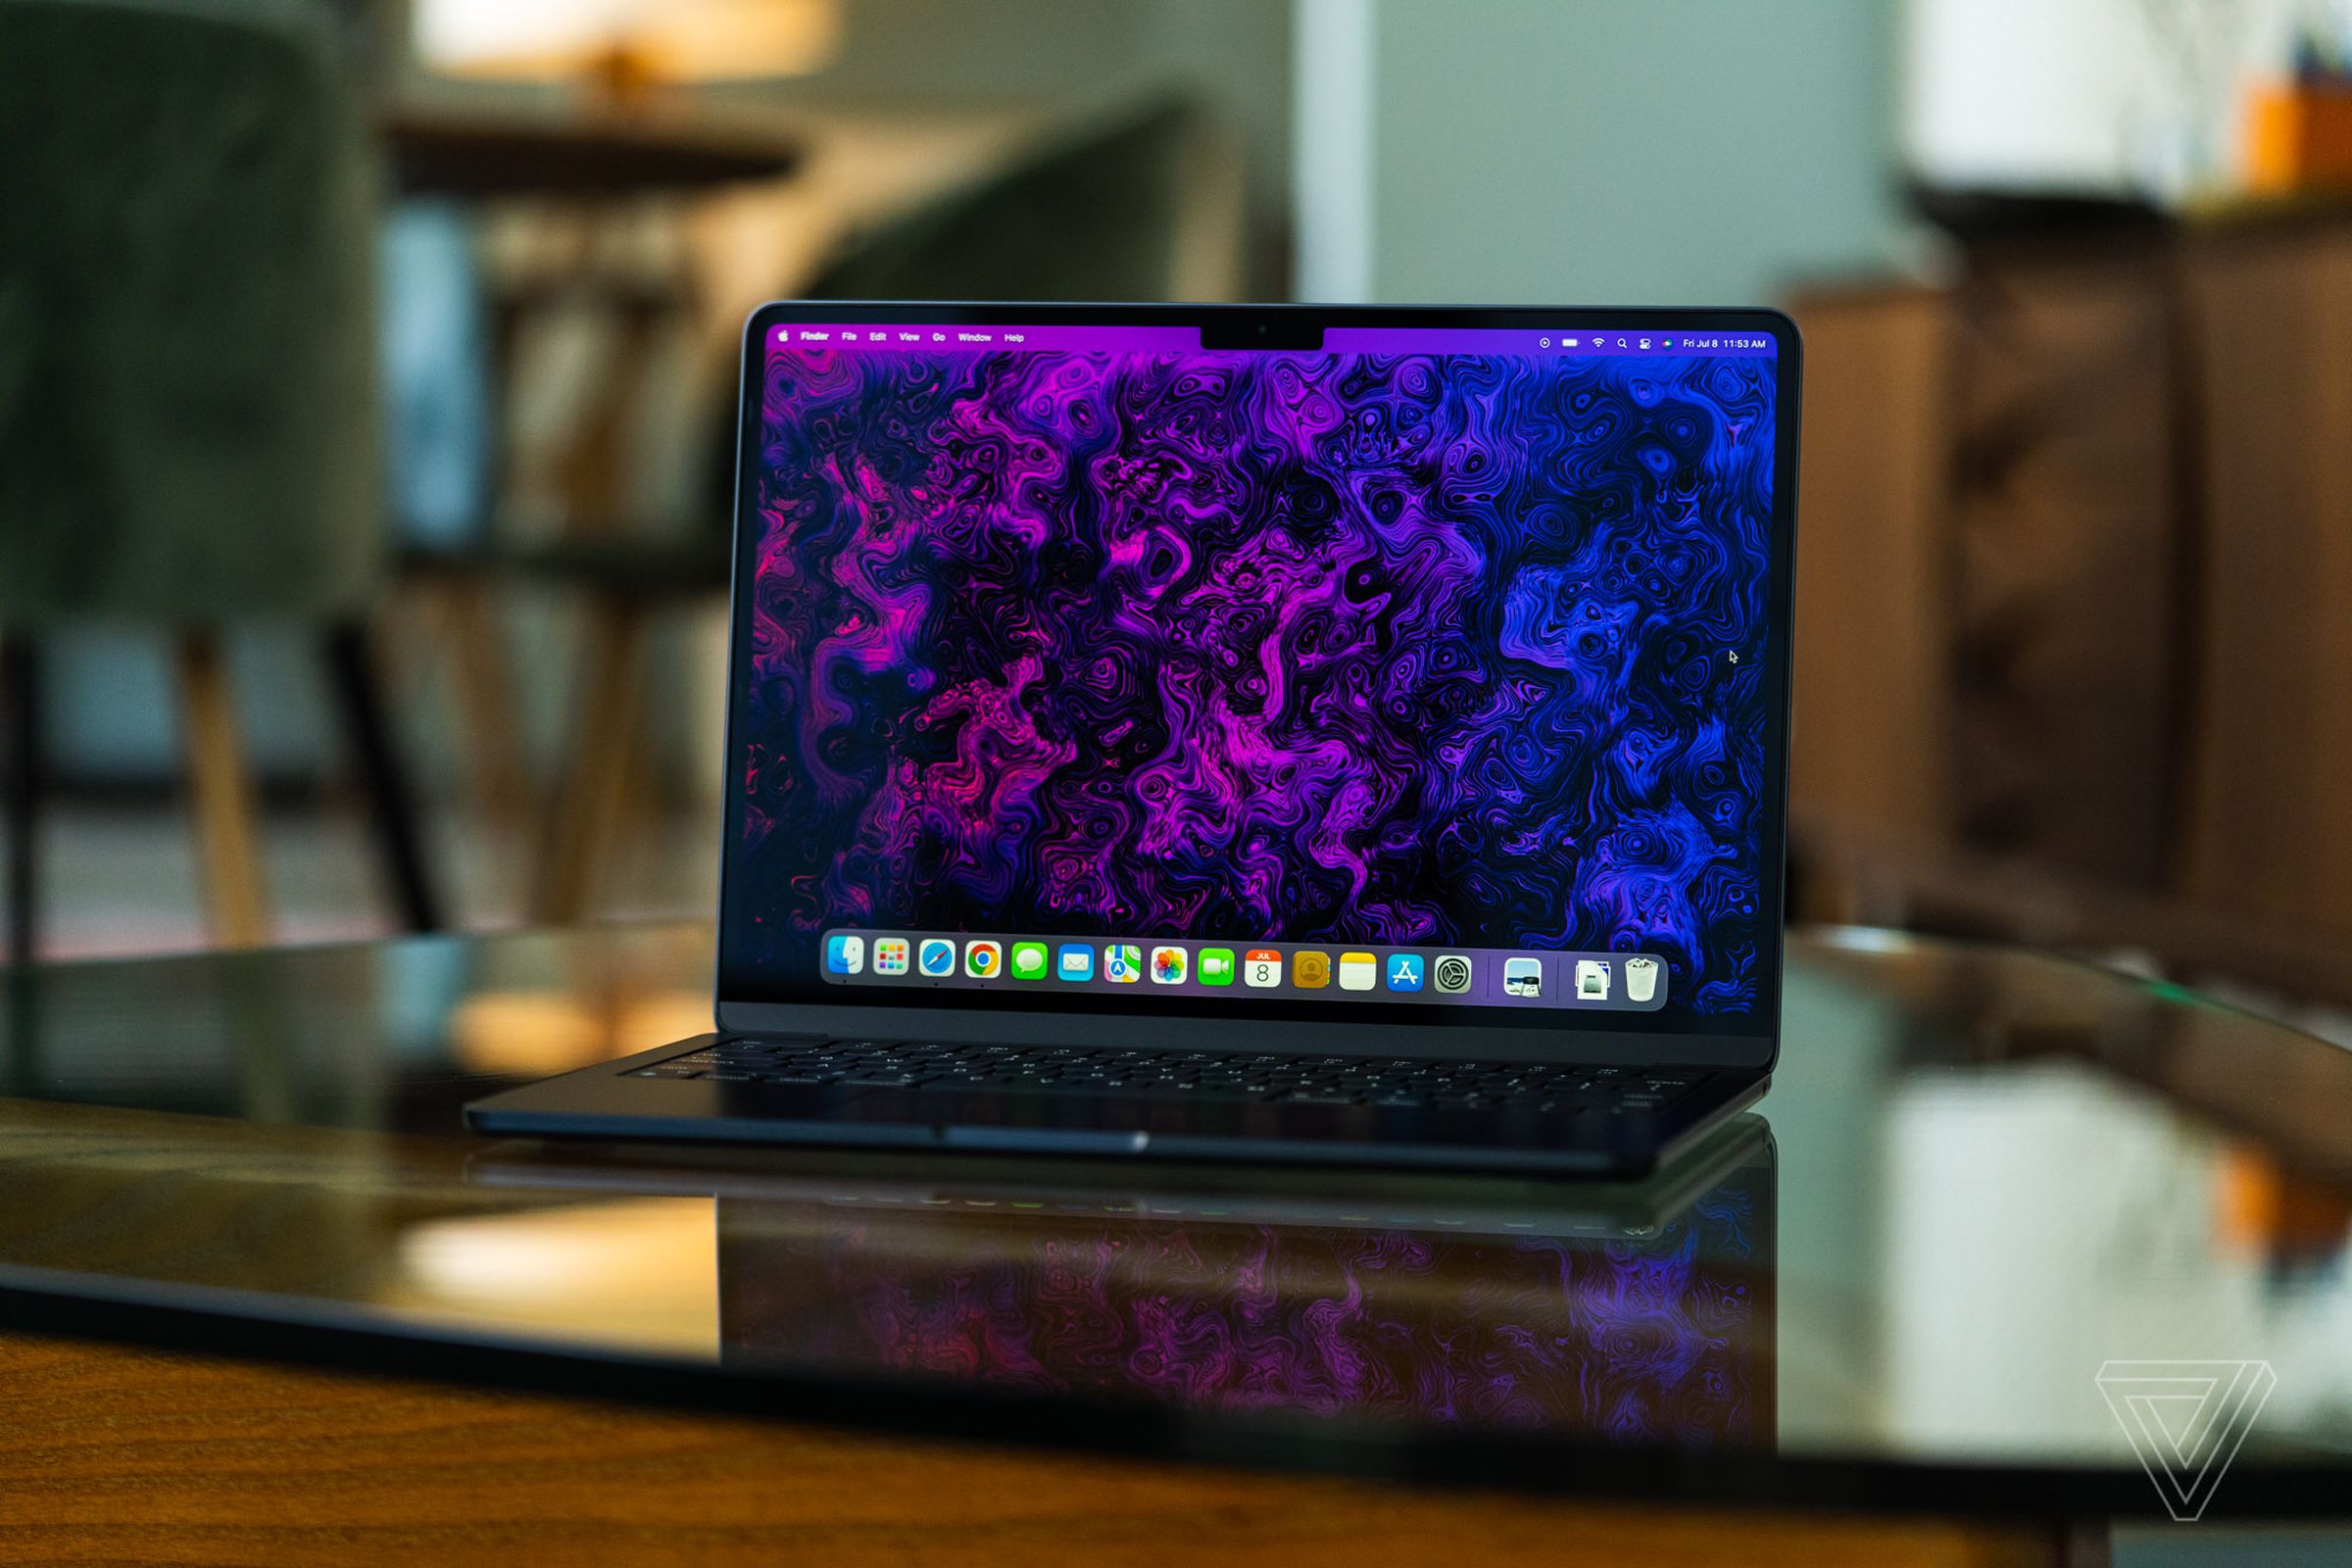 MacBook Air M2 открыт, лицом к камере.  Его дисплей включен, демонстрируя психоделические пурпурно-черные обои, созданные командой художников и иллюстраторов The Verge.